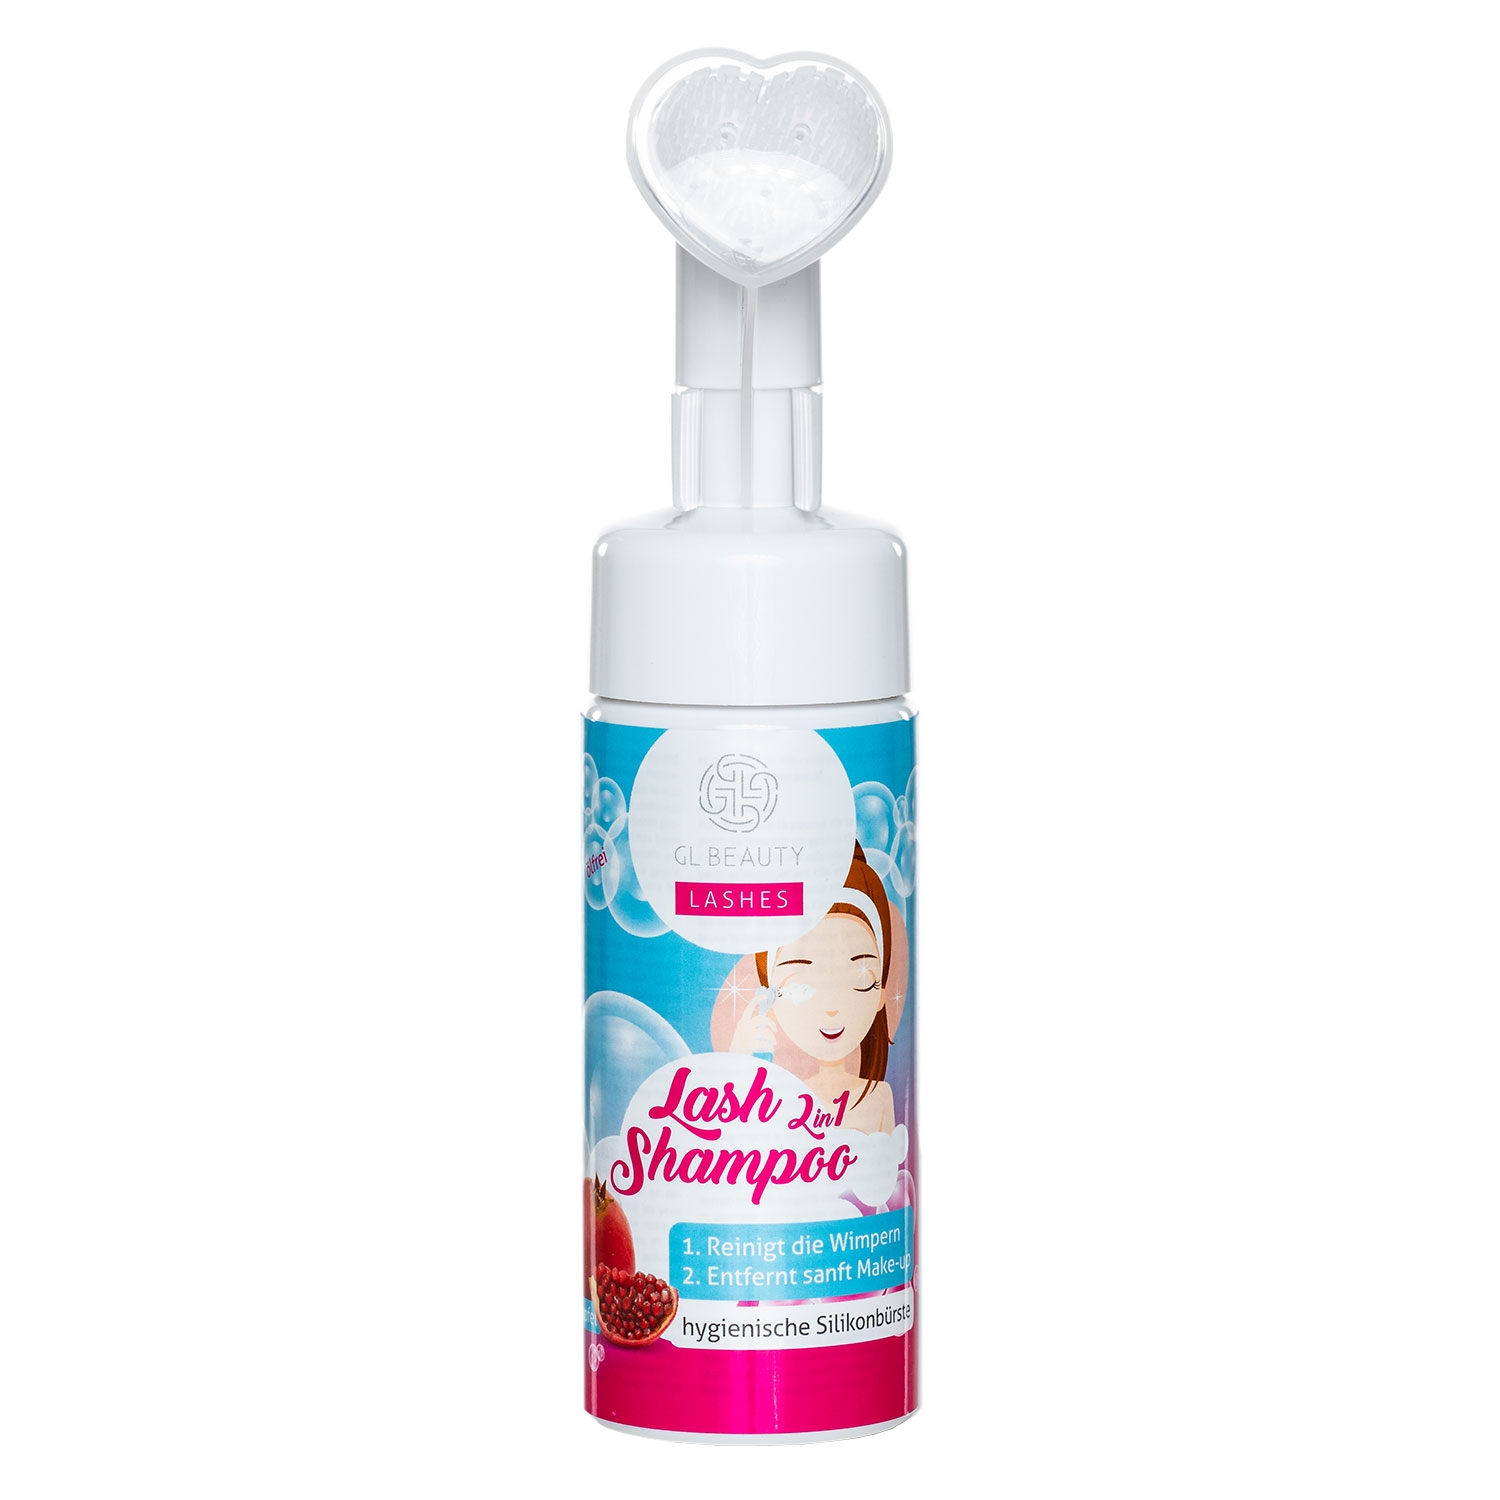 Product image from GL Beautycompany - Lash Shampoo 2in1 Pomegranate